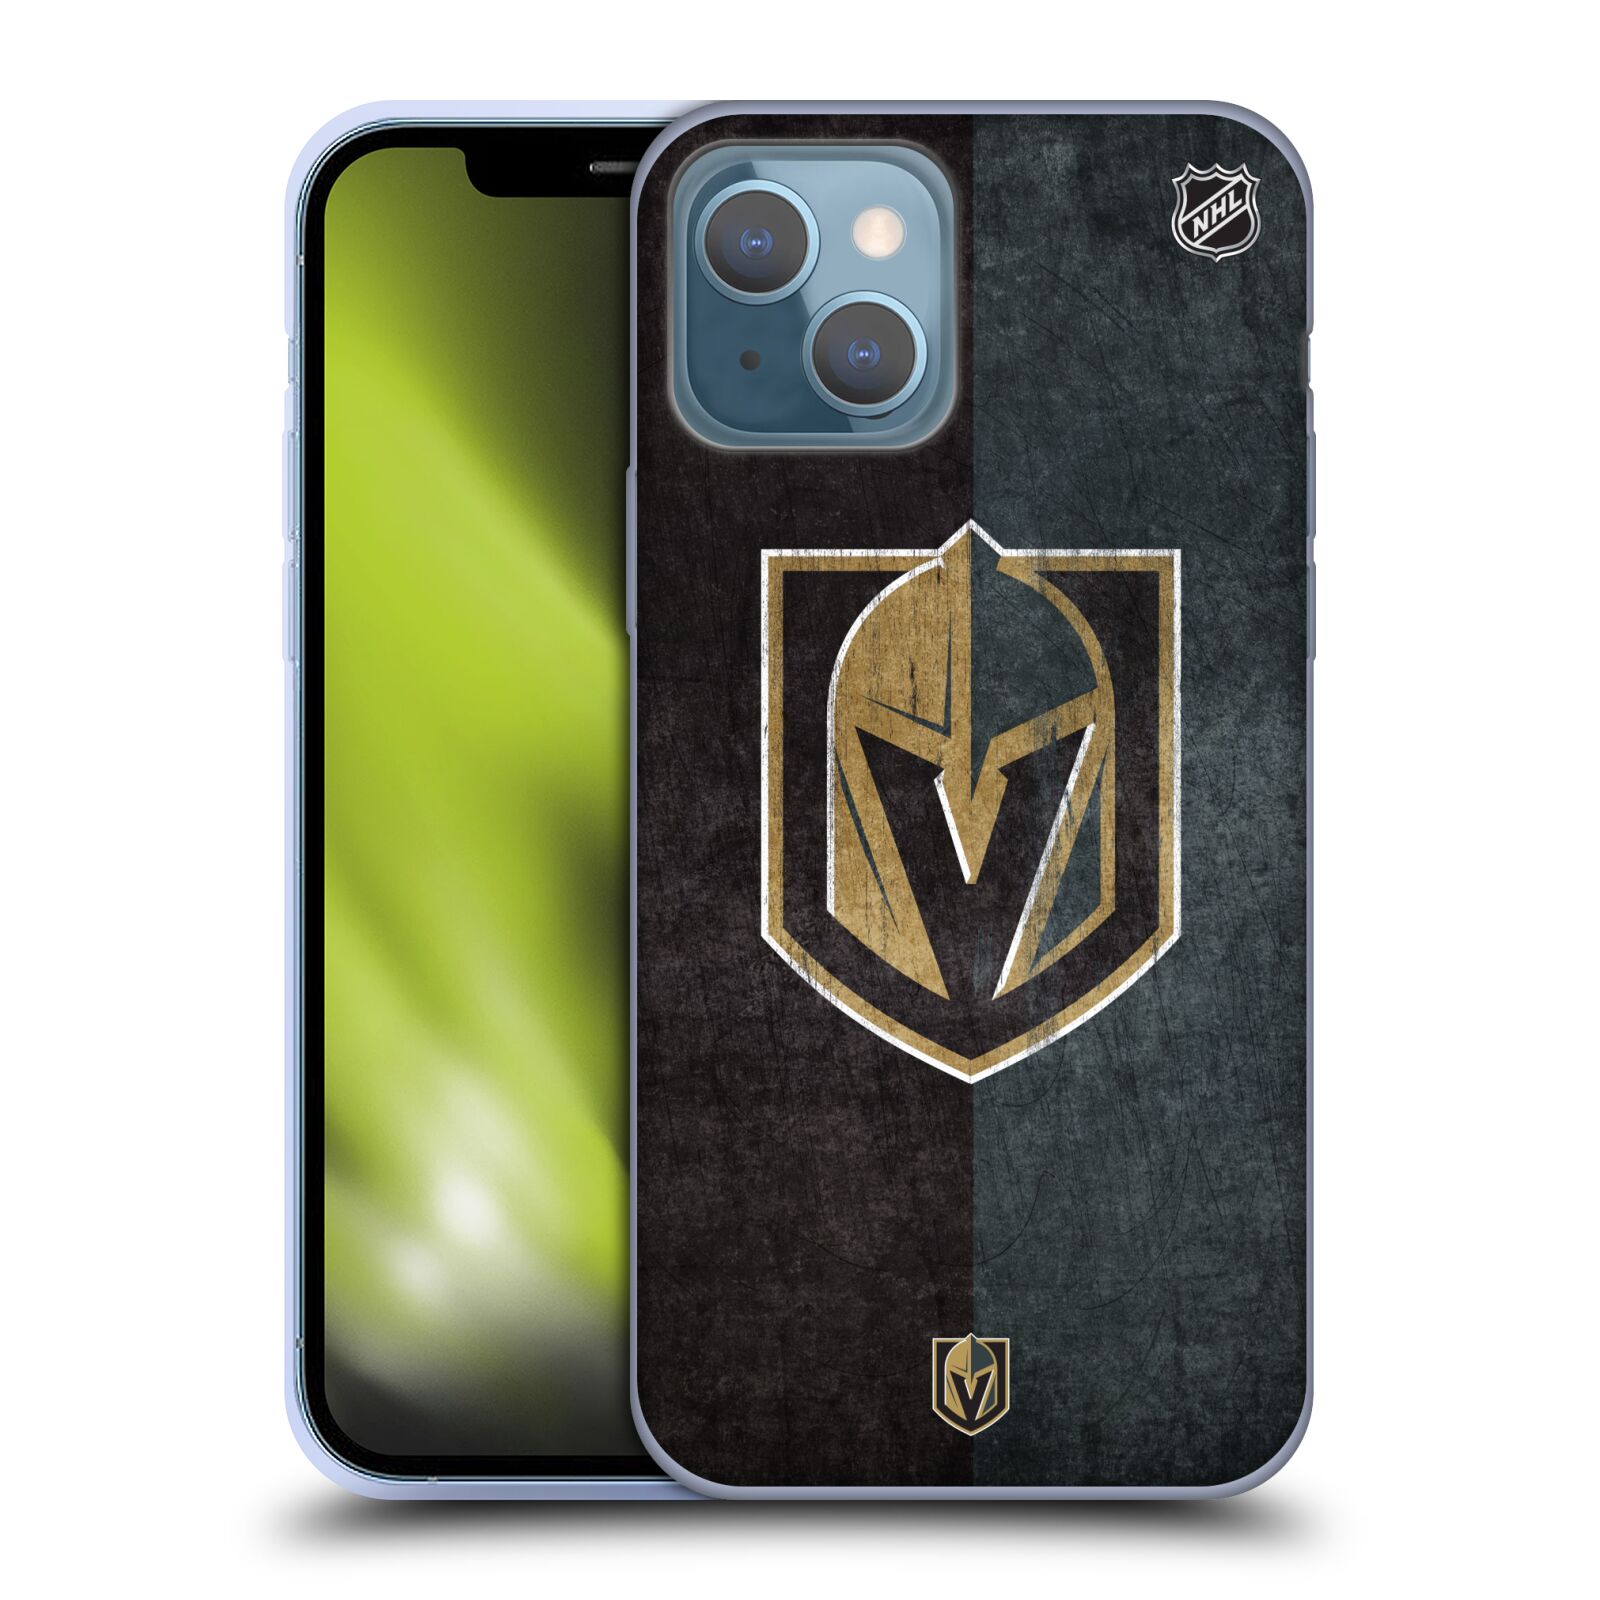 Silikonové pouzdro na mobil Apple iPhone 13 - NHL - Půlené logo Vegas Golden Knights (Silikonový kryt, obal, pouzdro na mobilní telefon Apple iPhone 13 s licencovaným motivem NHL - Půlené logo Vegas Golden Knights)